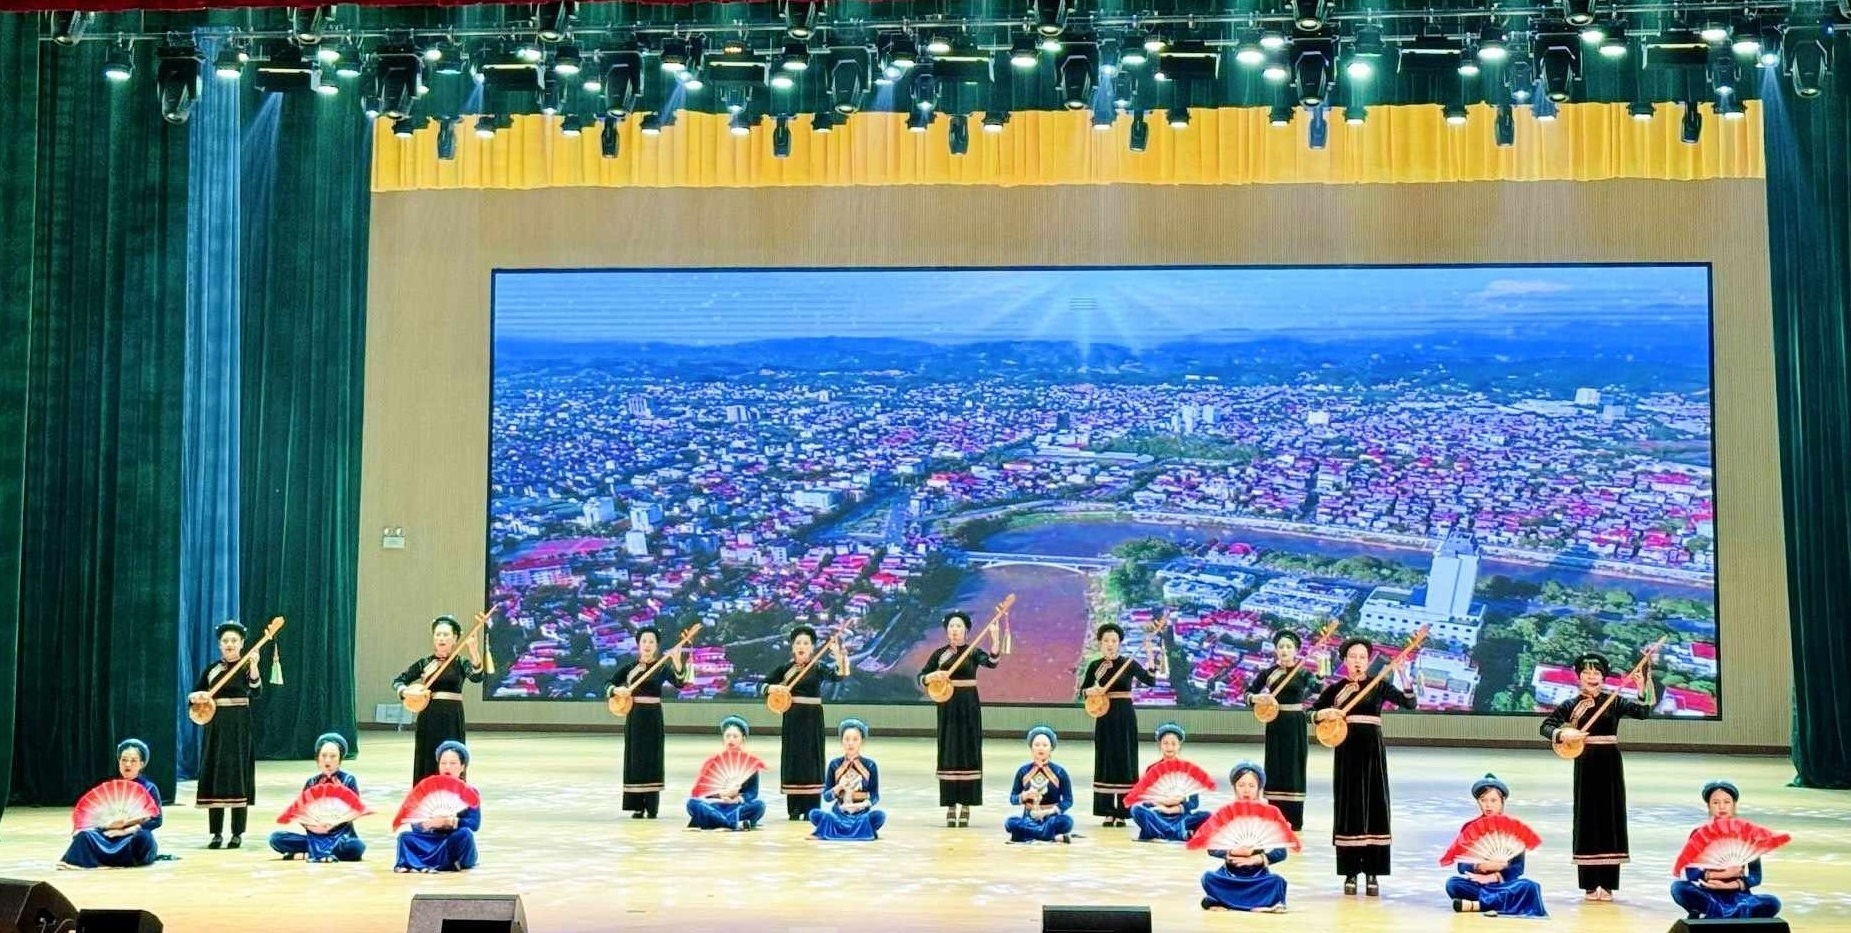 谅山青少年交流表演节目歌颂家乡和祖国。